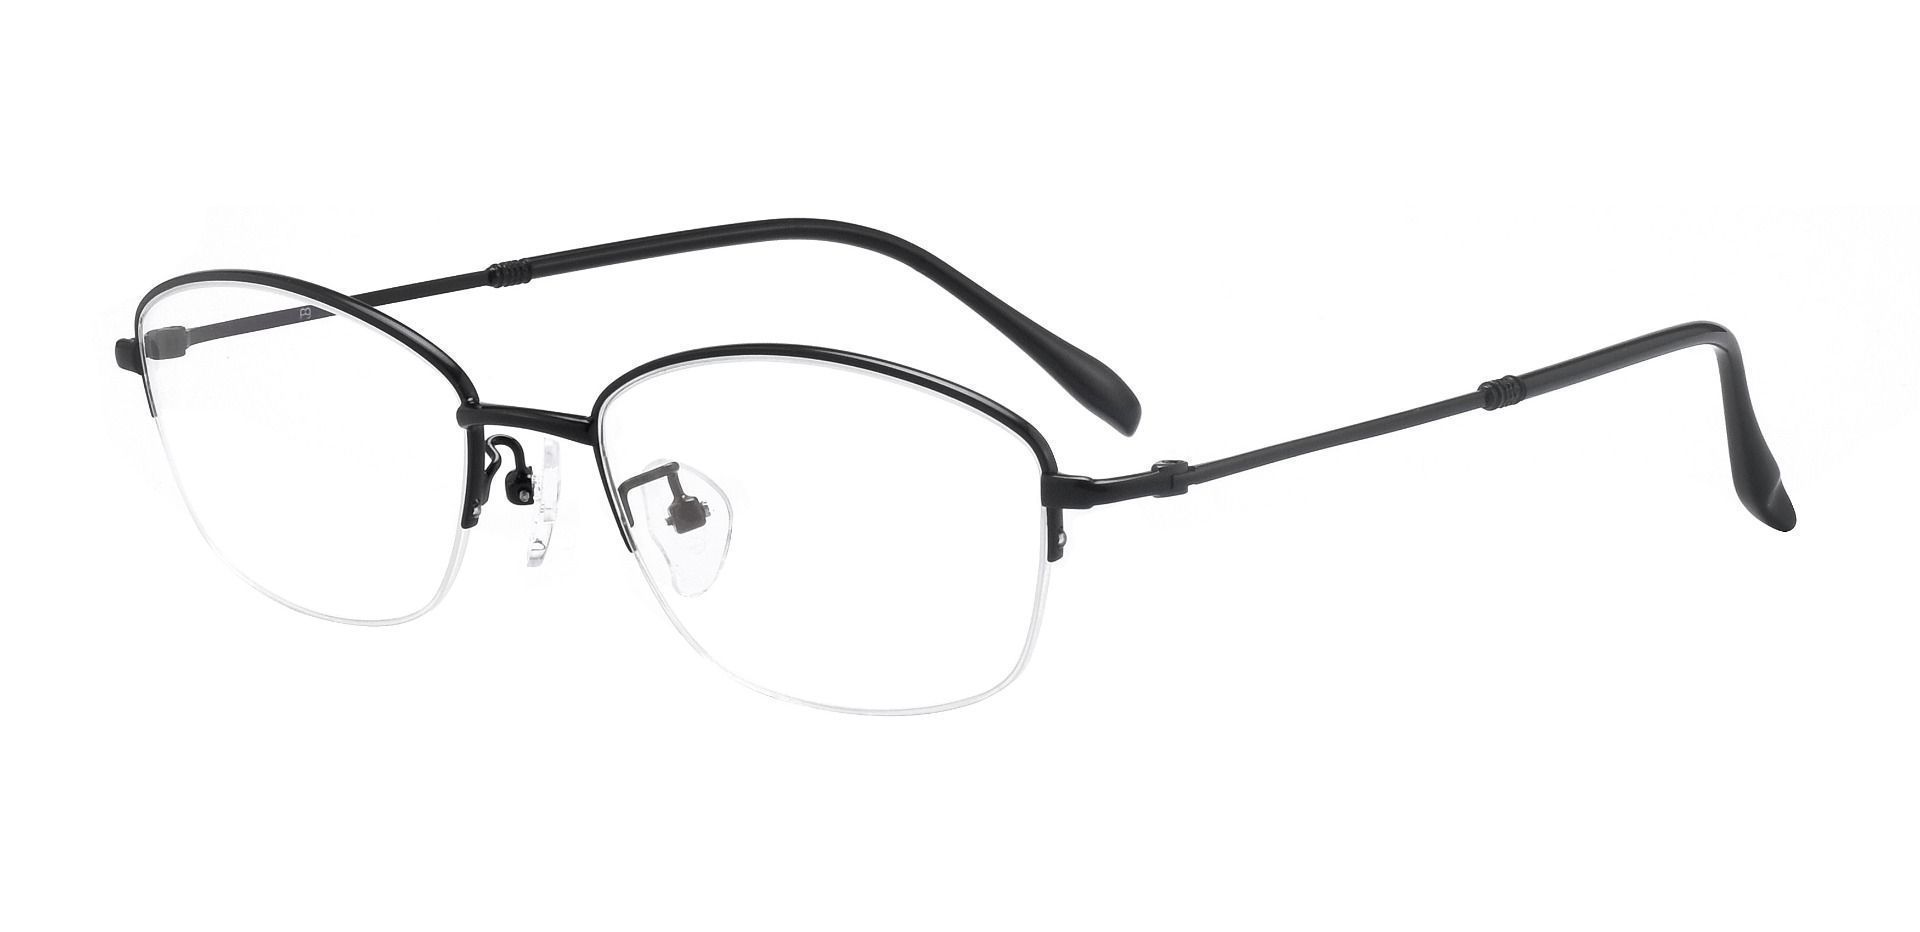 Mendoza Oval Progressive Glasses - Black